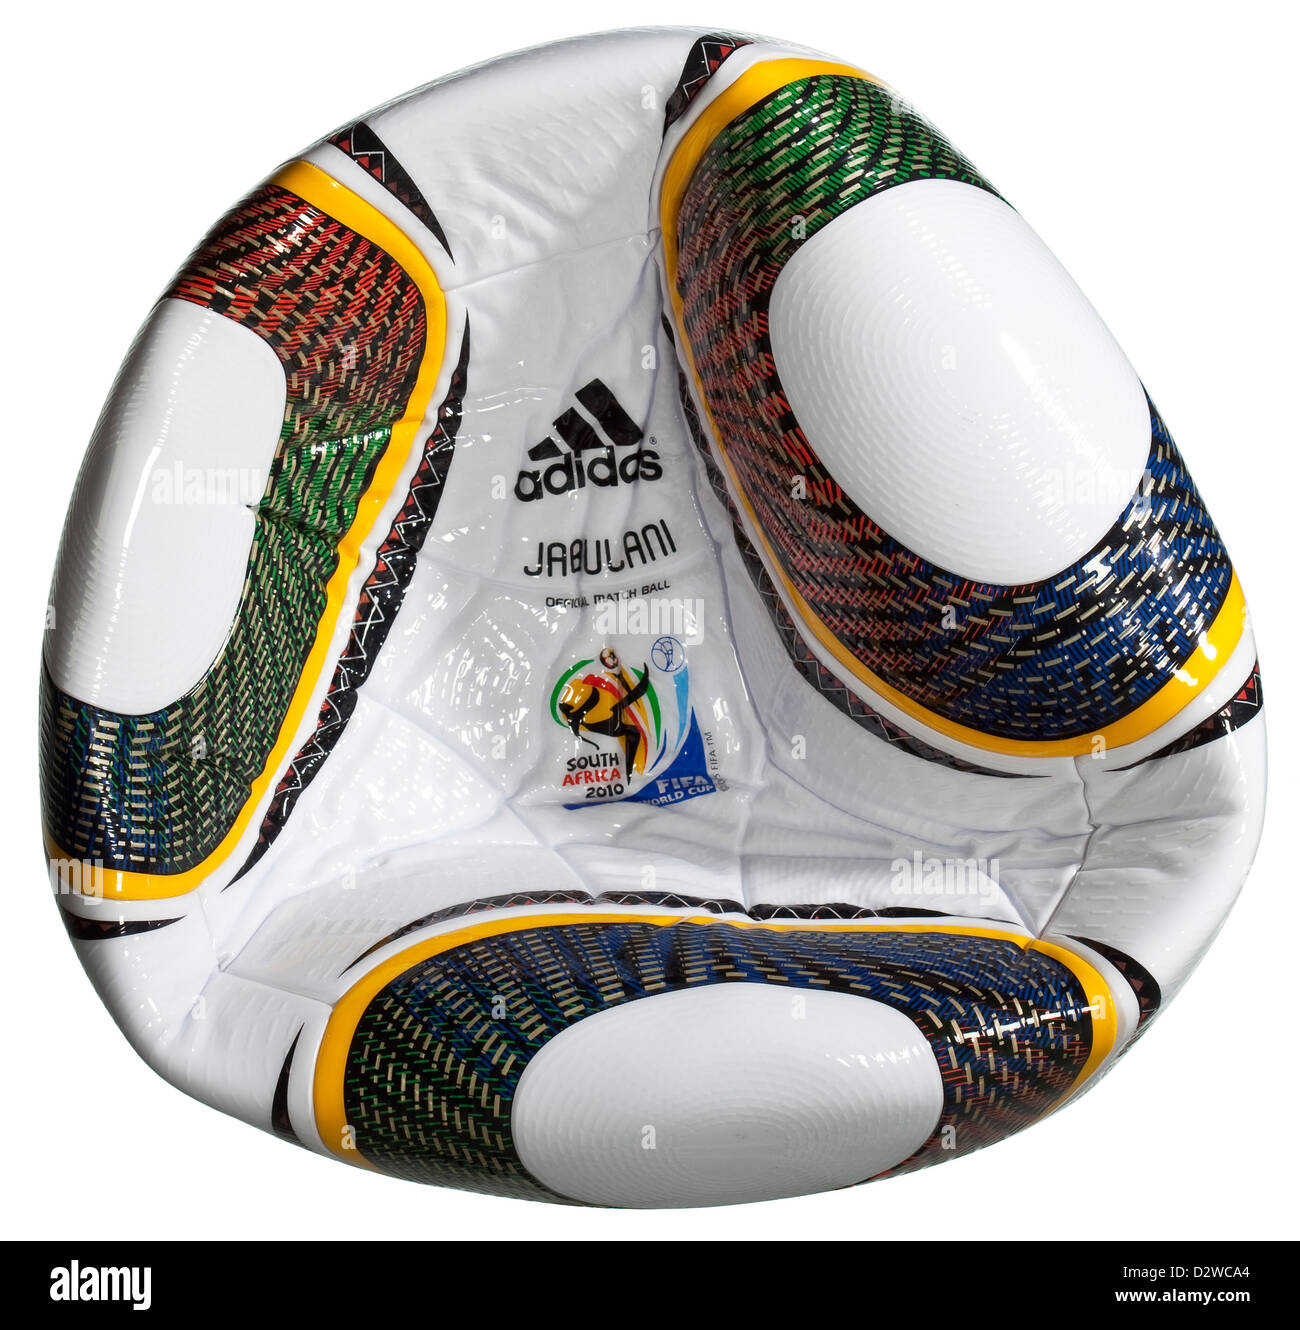 Alemania, Adidas Jabulani, balón oficial de la Copa Mundial de la FIFA 2010  Fotografía de stock - Alamy